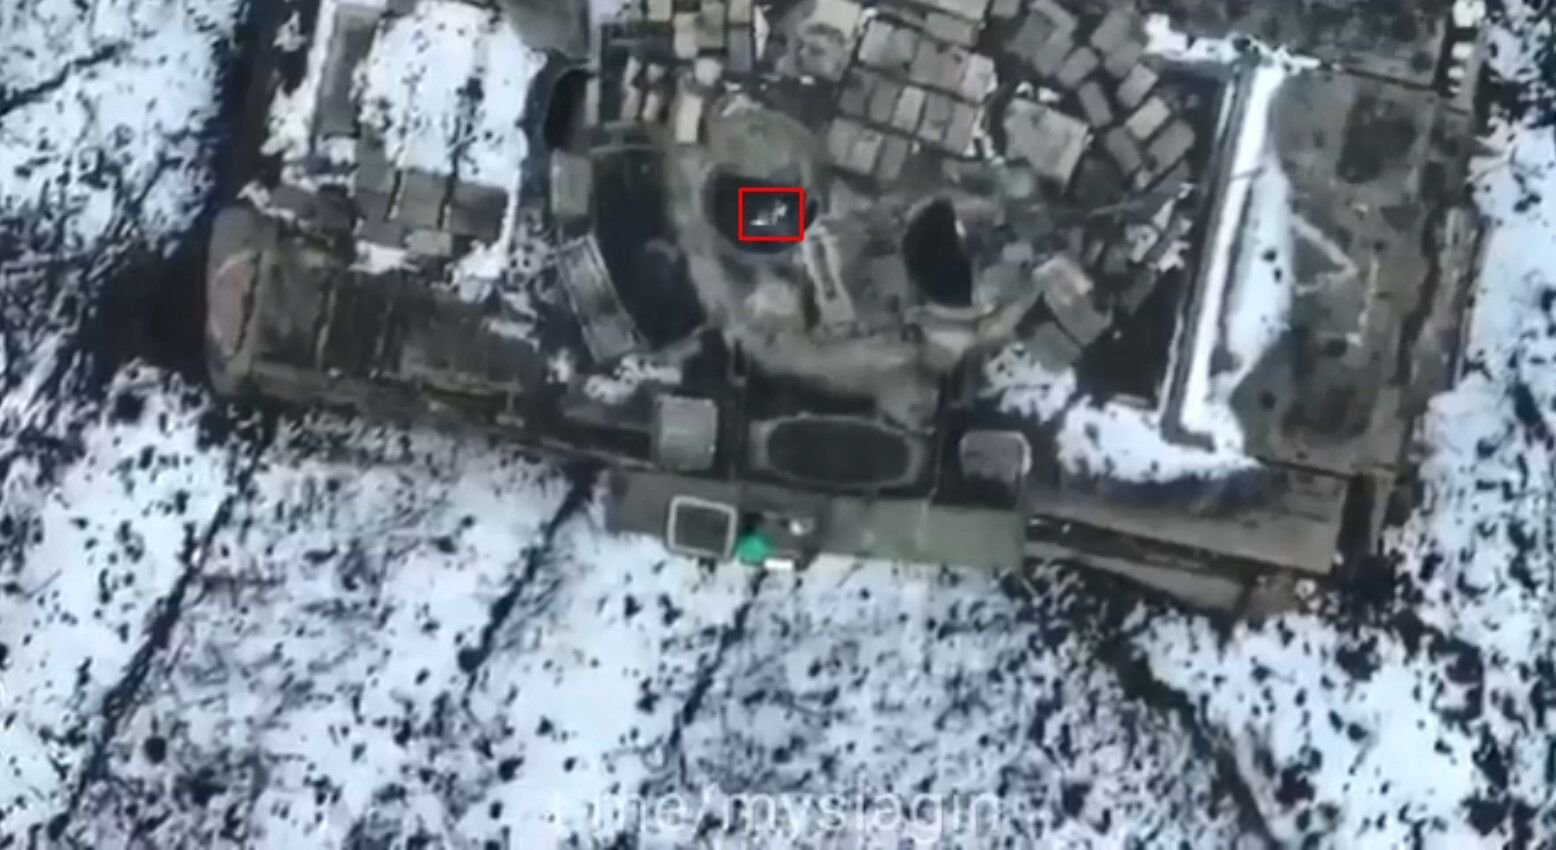 ВСУ уничтожили танк Т-80 армии рф оригинальным способом: помогло устройство ценой 200 грн (видео)